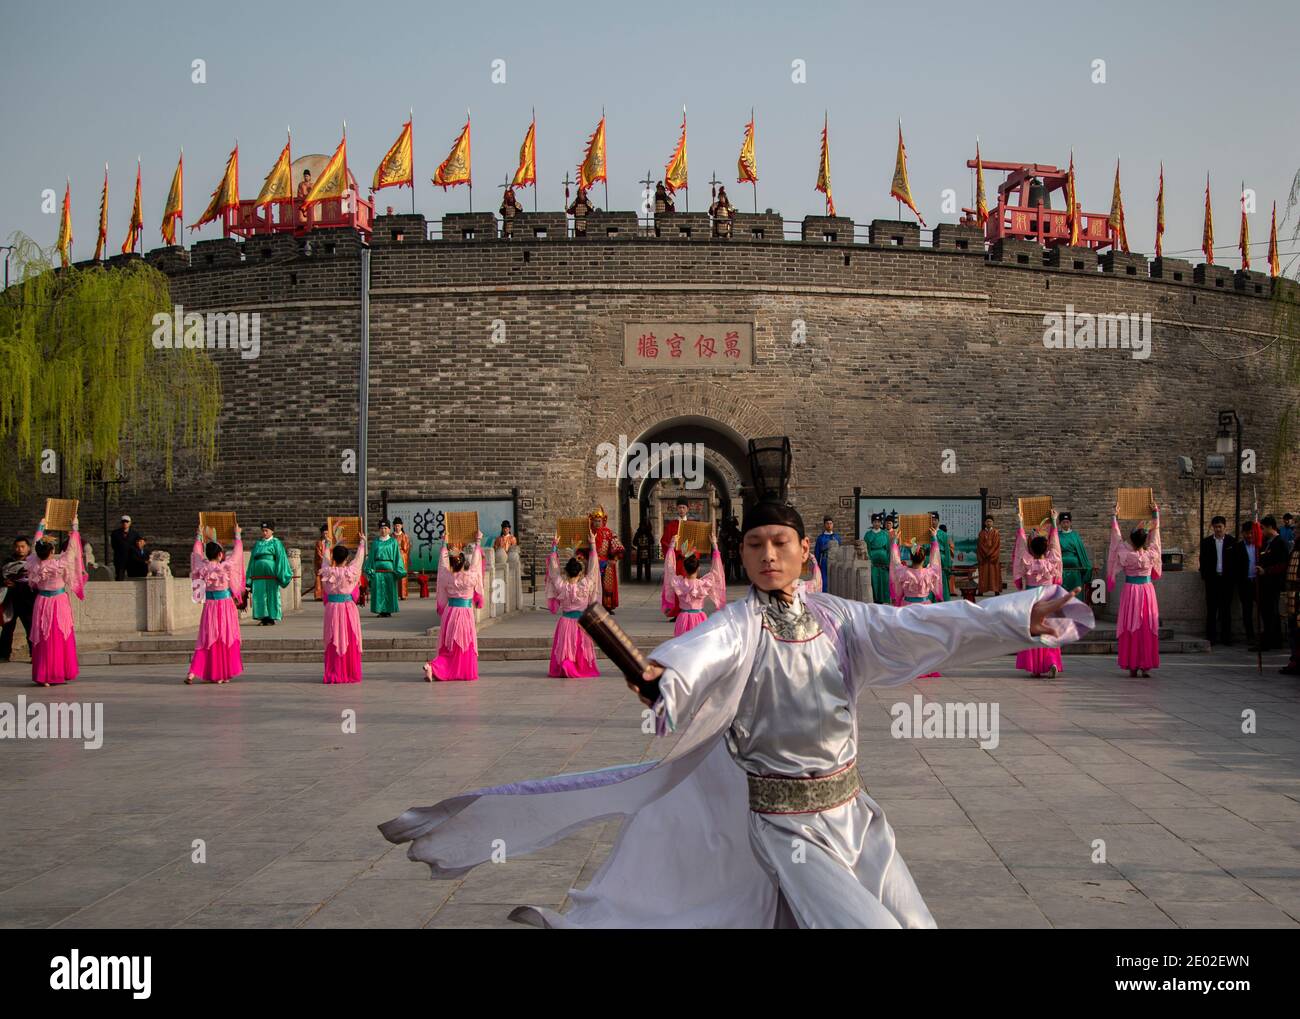 Los actores realizan las seis Artes Confucianas tradicionales, que es la base de la educación en la antigua China Foto de stock